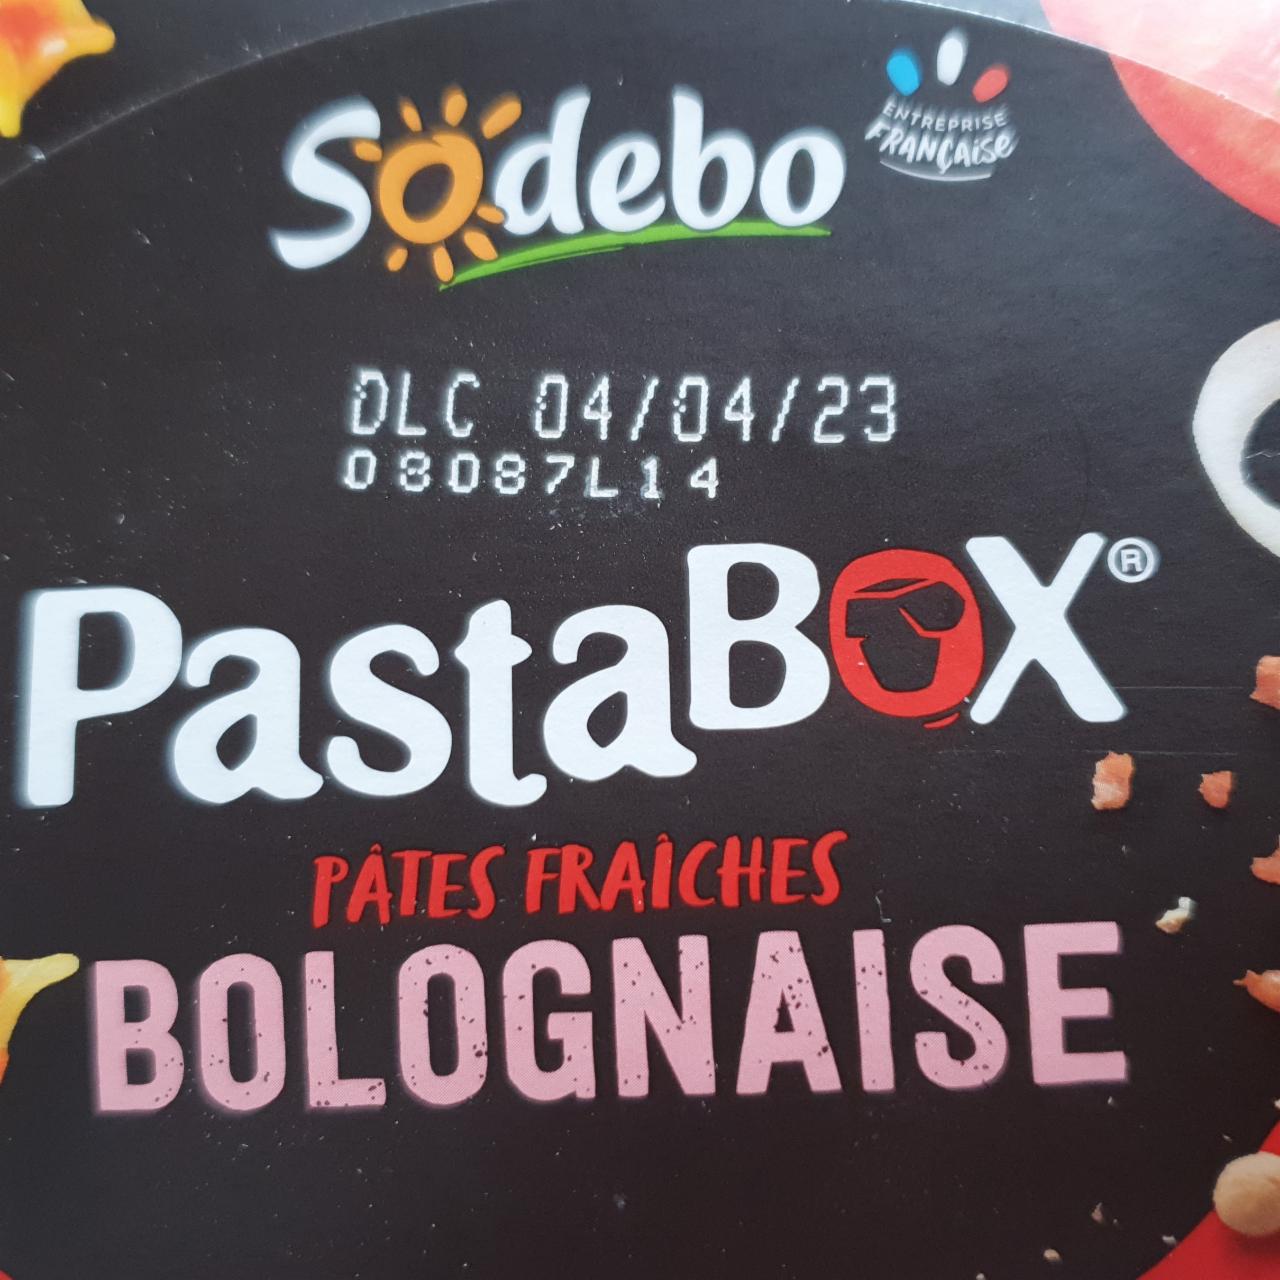 Fotografie - PastaBOX Bolognaise Sodebo